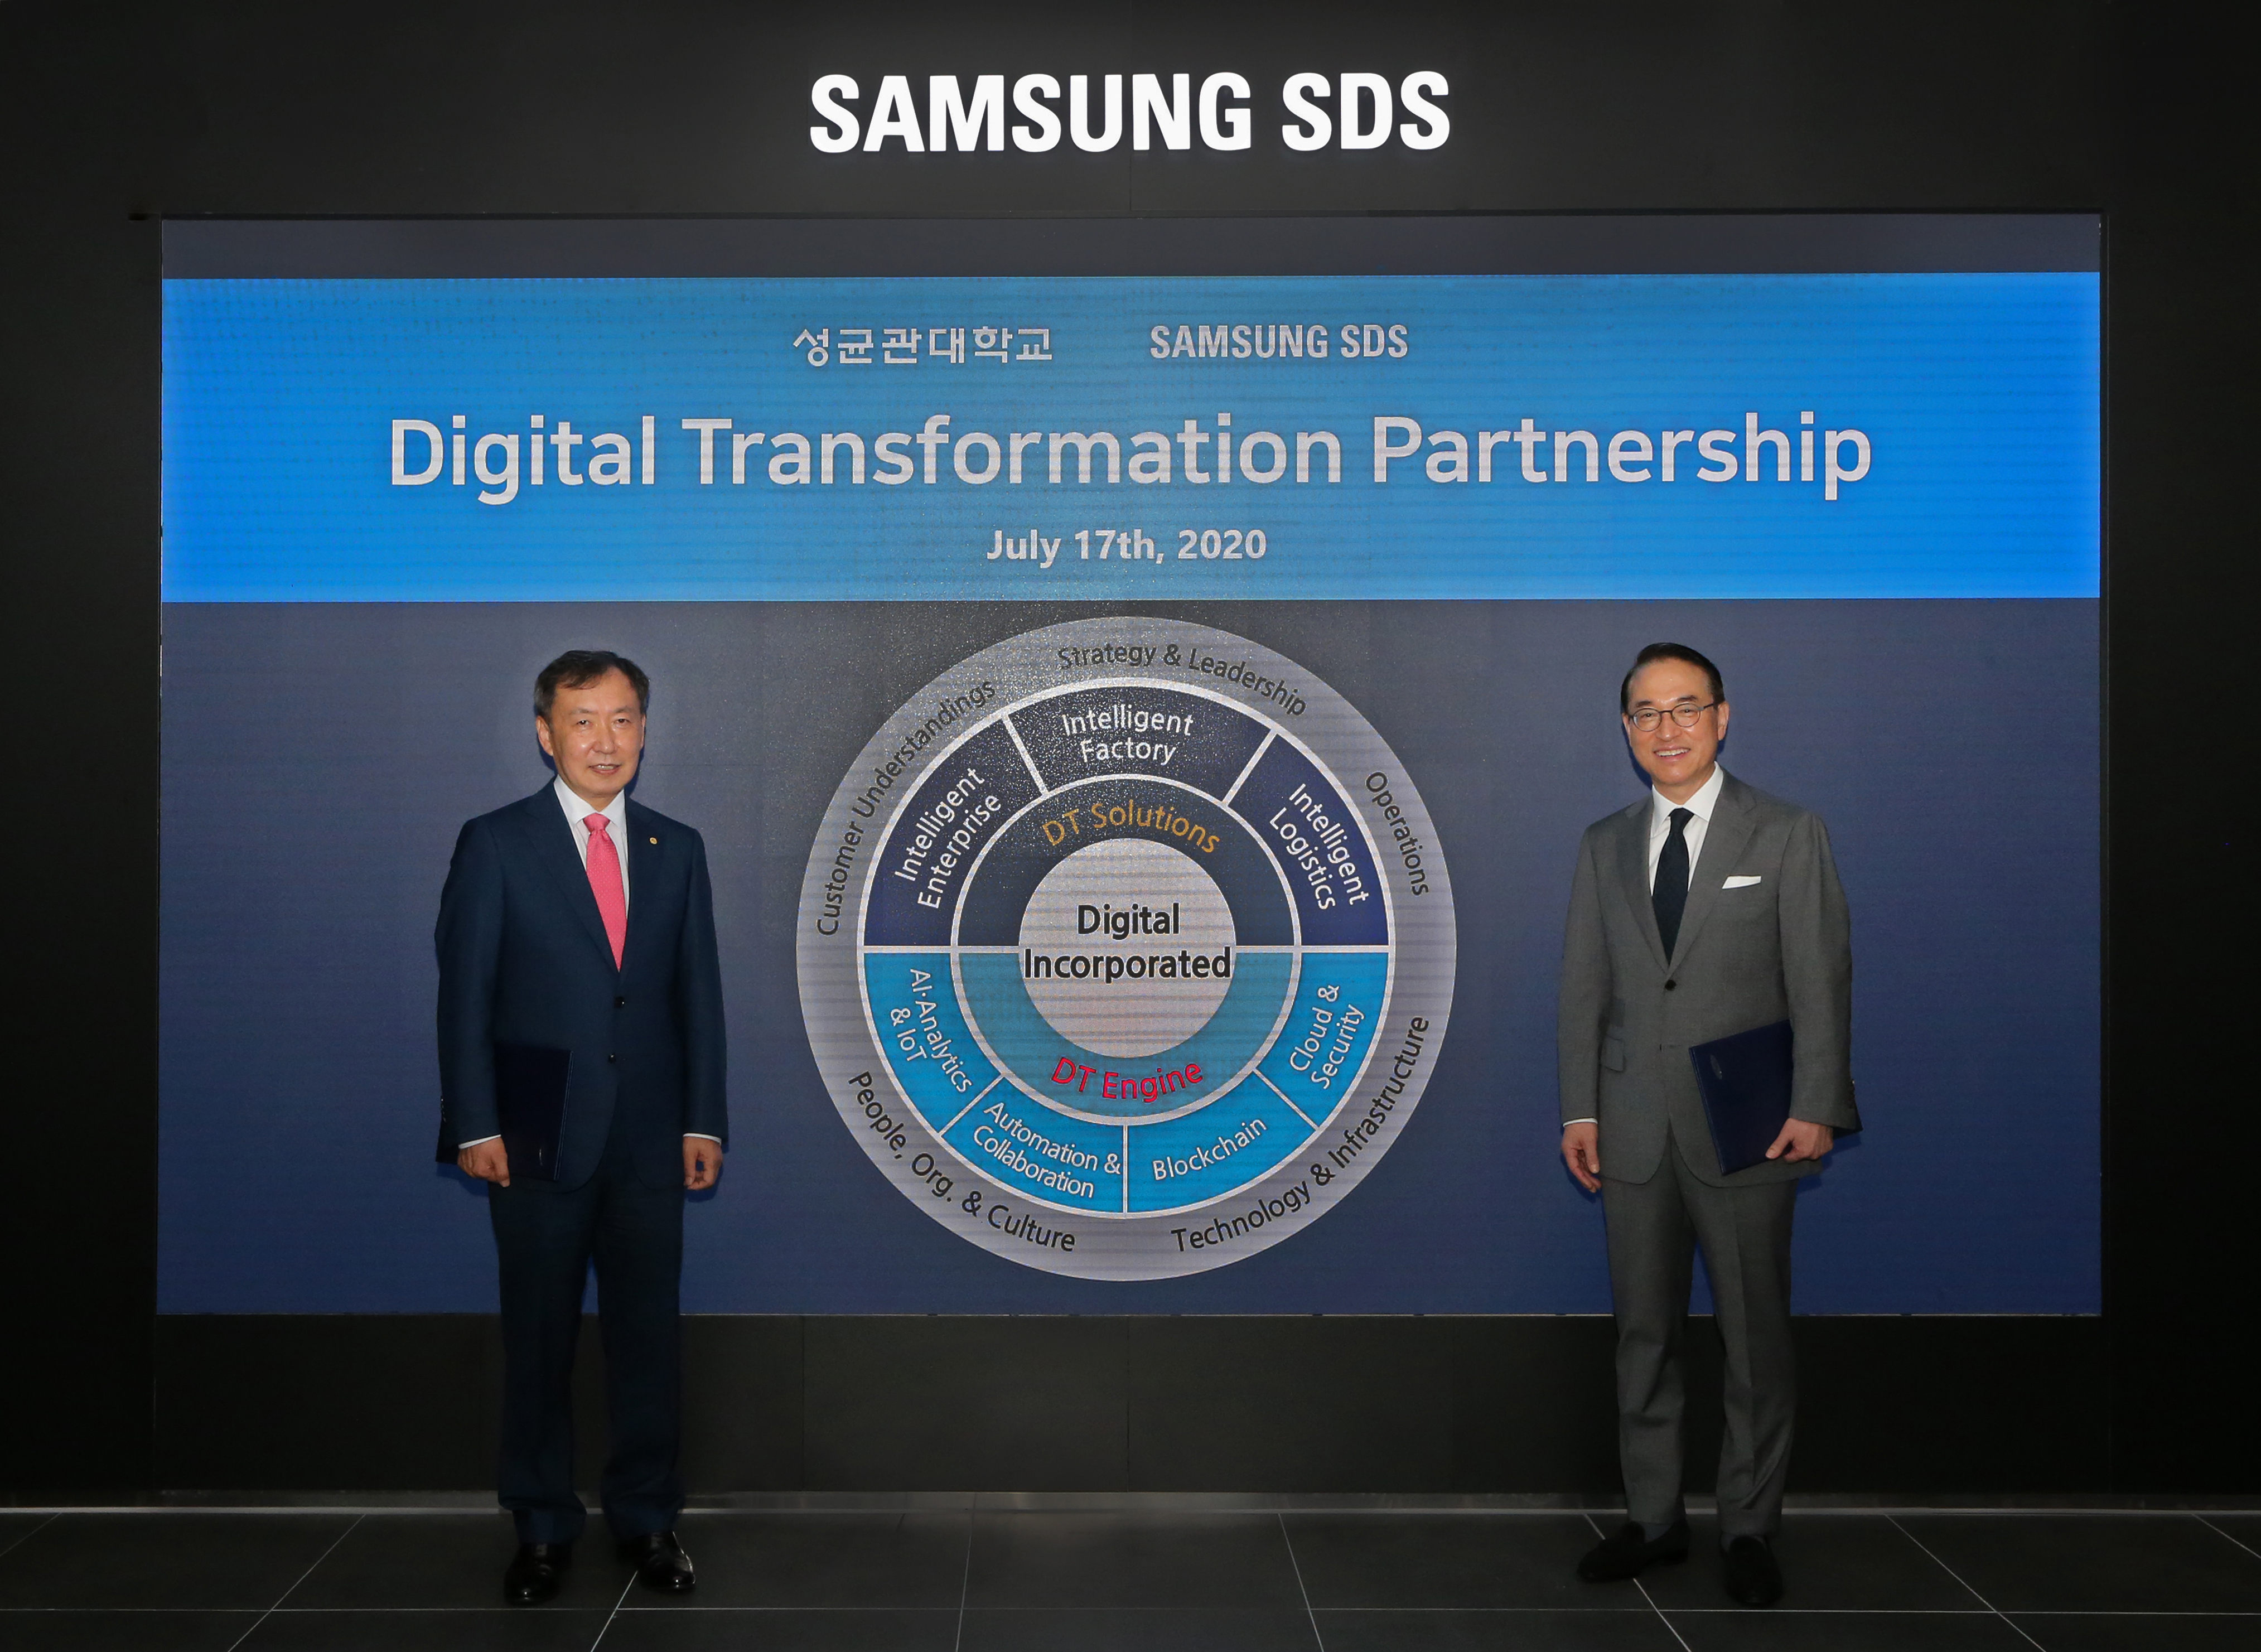 삼성SDS 홍원표 대표(우측)와 성균관대학교 신동렬 총장이 삼성SDS 잠실캠퍼스에서 디지털트랜스포메이션 추진을 위한 산학협약을 체결했다. 